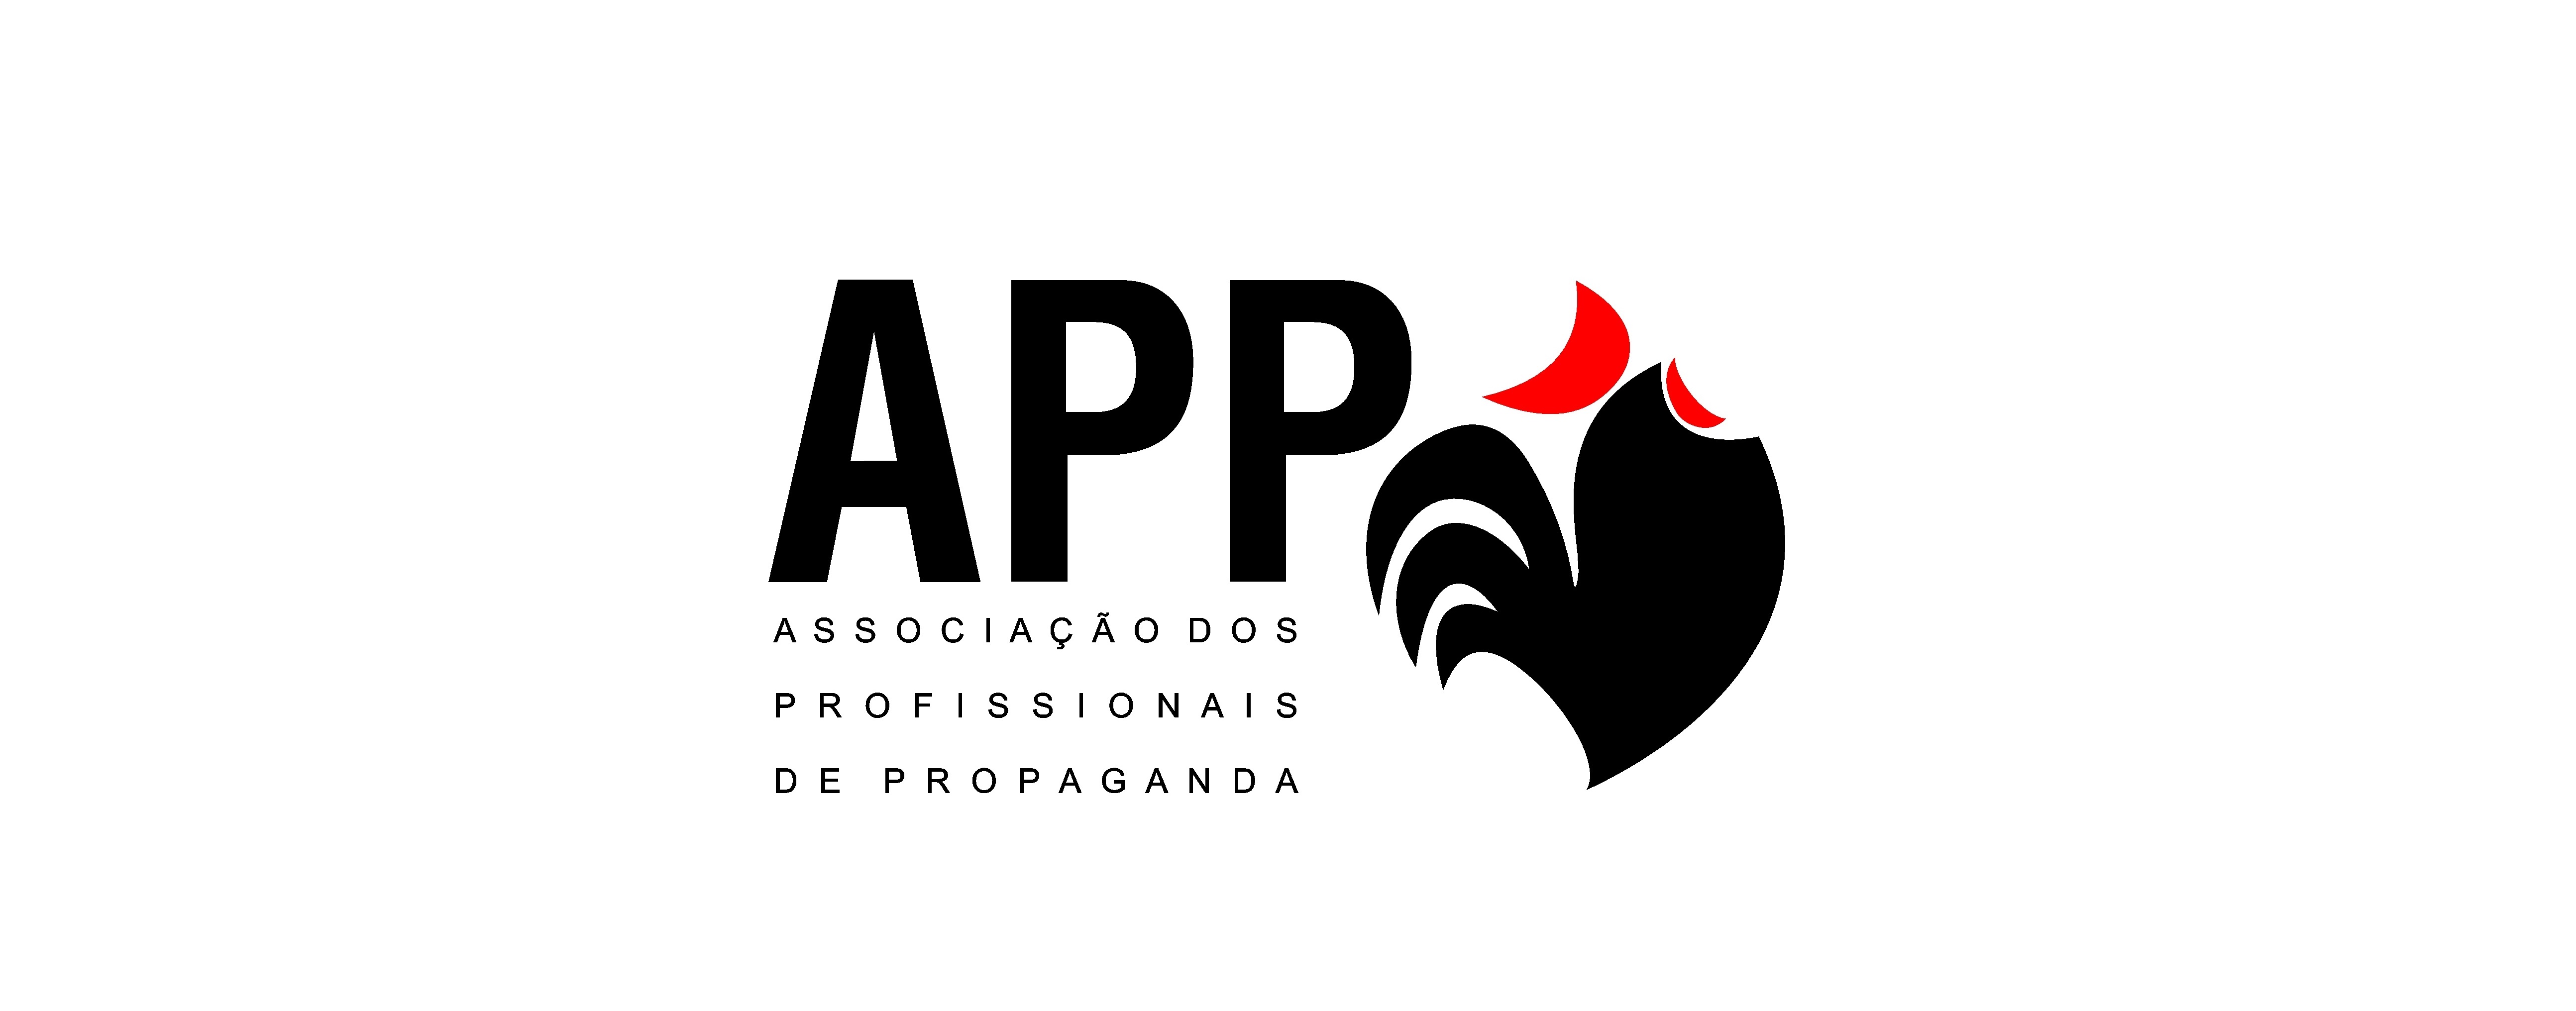 APP e ABP lançam serviço que protege ideias publicitárias criadas no País